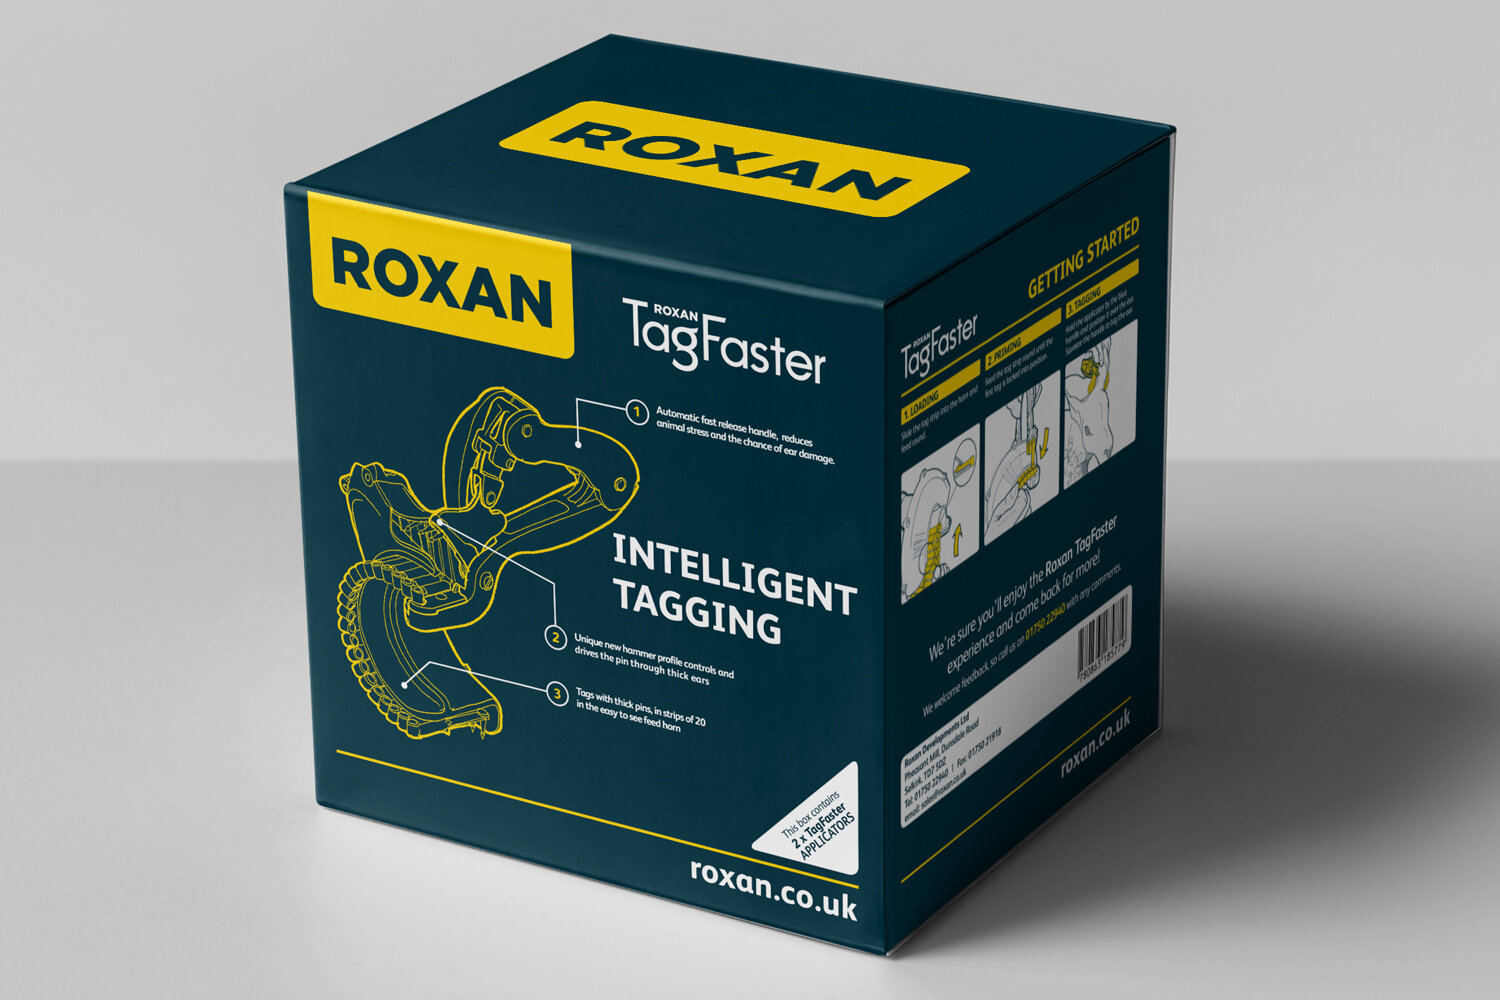 Roxan Box1.jpg